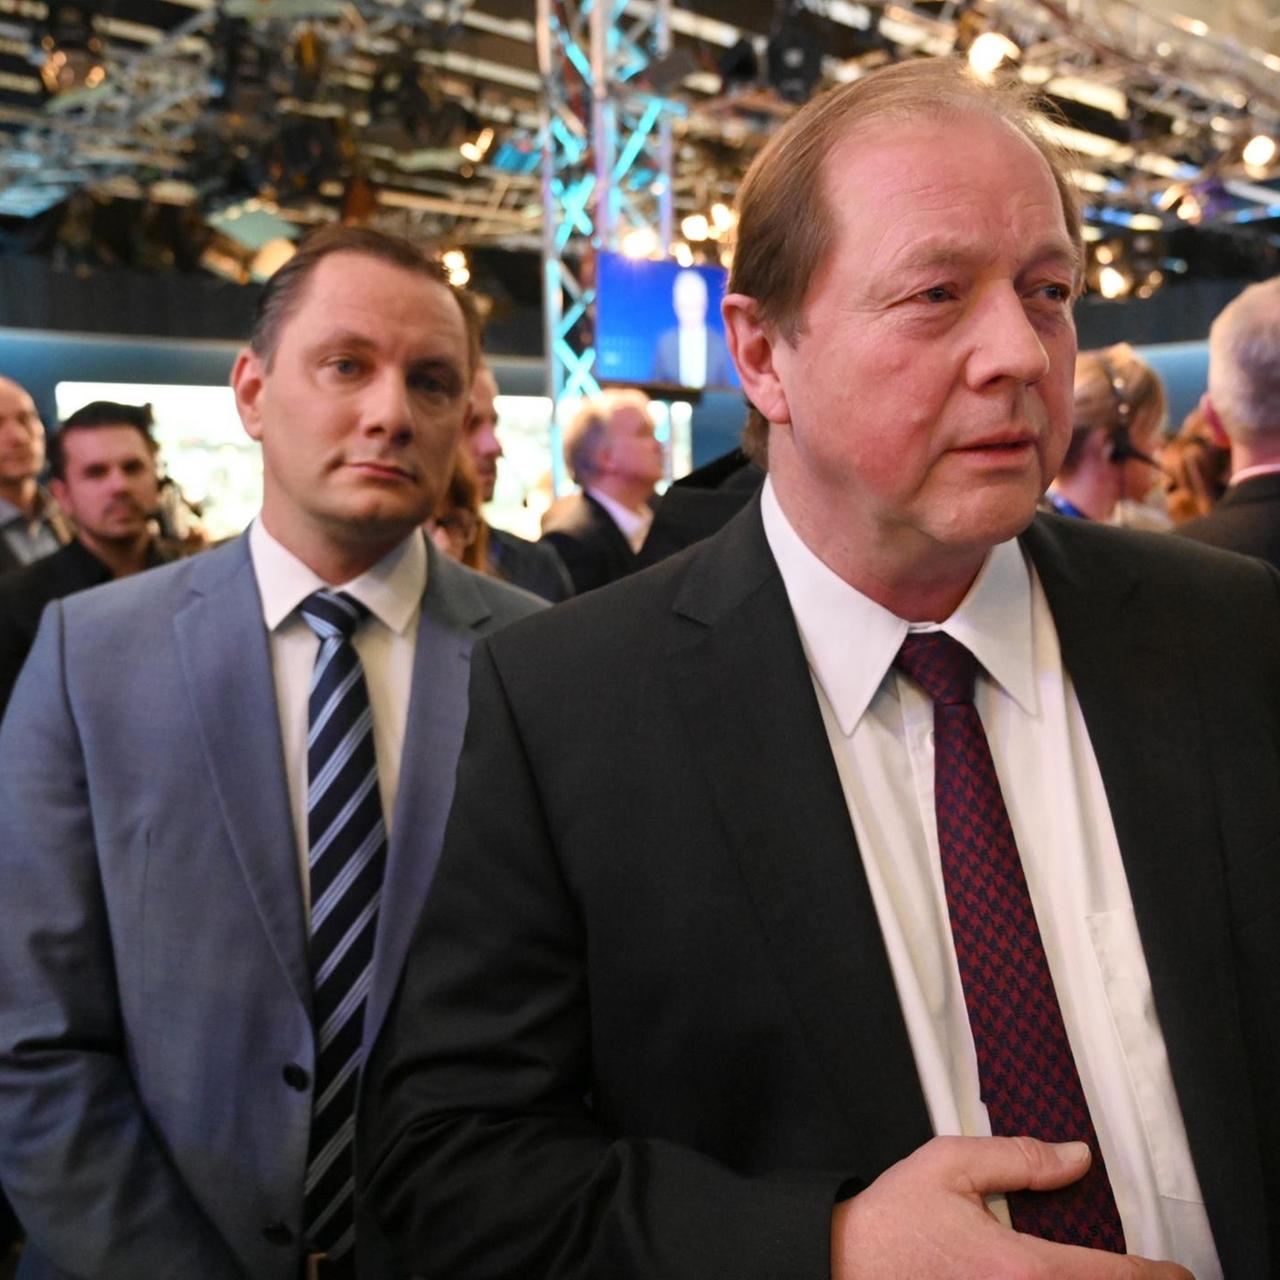 Zu sehen ist der Spitzenkandidat der AfD zur Hamburg-Wahl, Dirk-Wolfgang Nockemann. Er schaut mit Parteifreunden ernst nach Bekanntgabe der ersten Prognose.